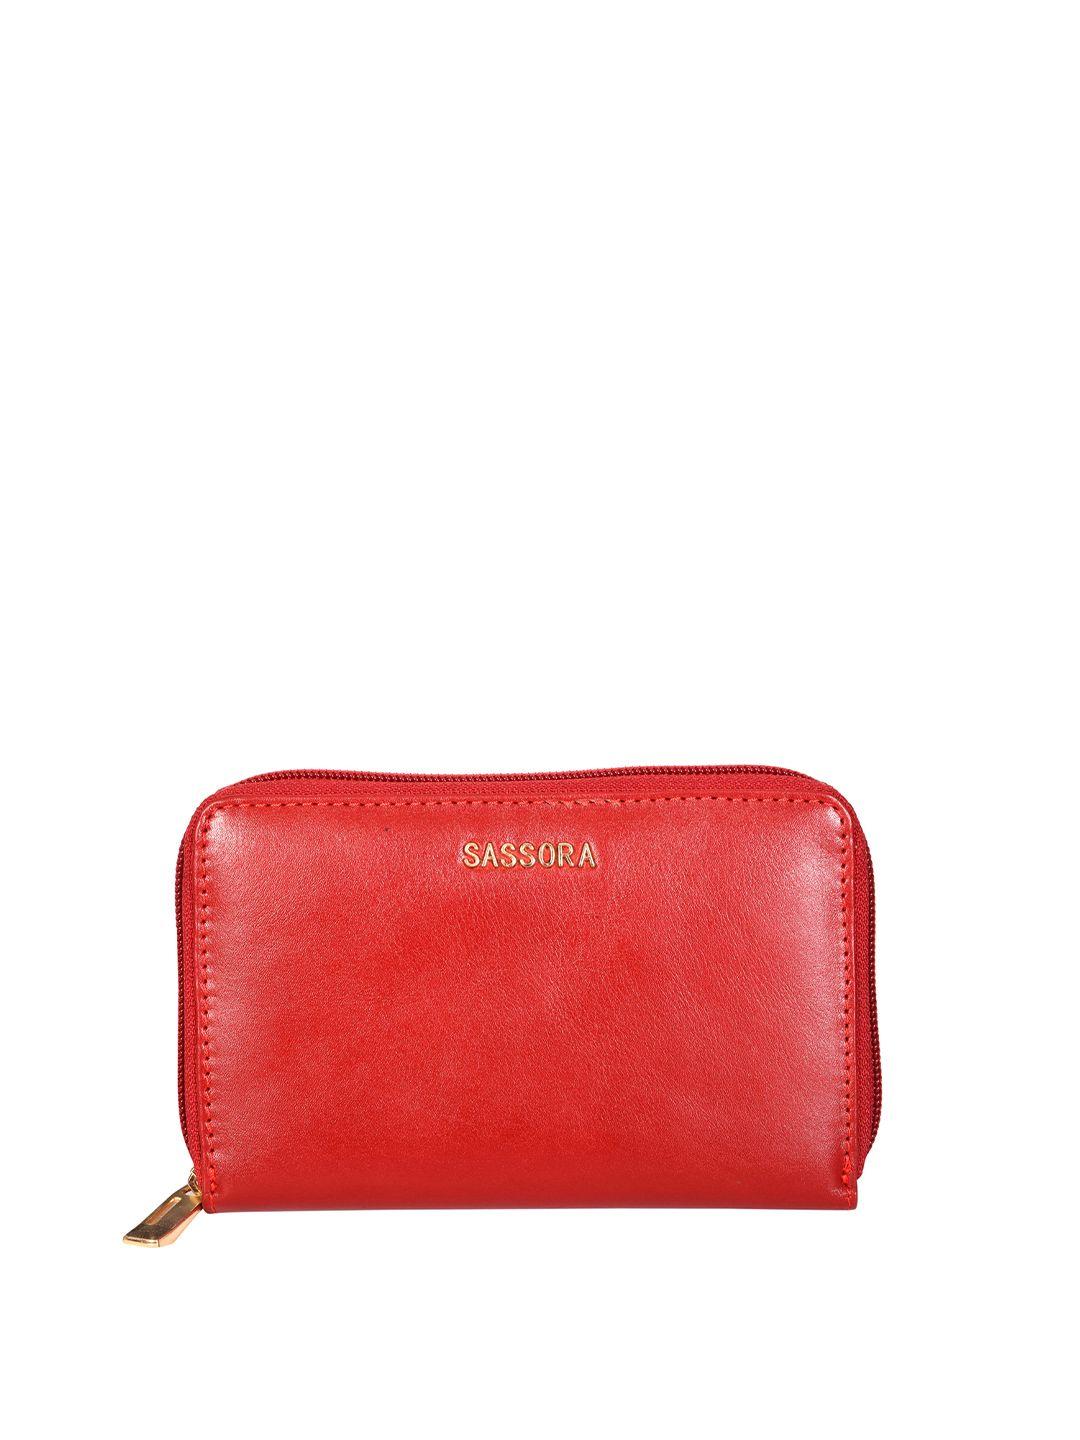 sassora women red zip detail leather zip around wallet